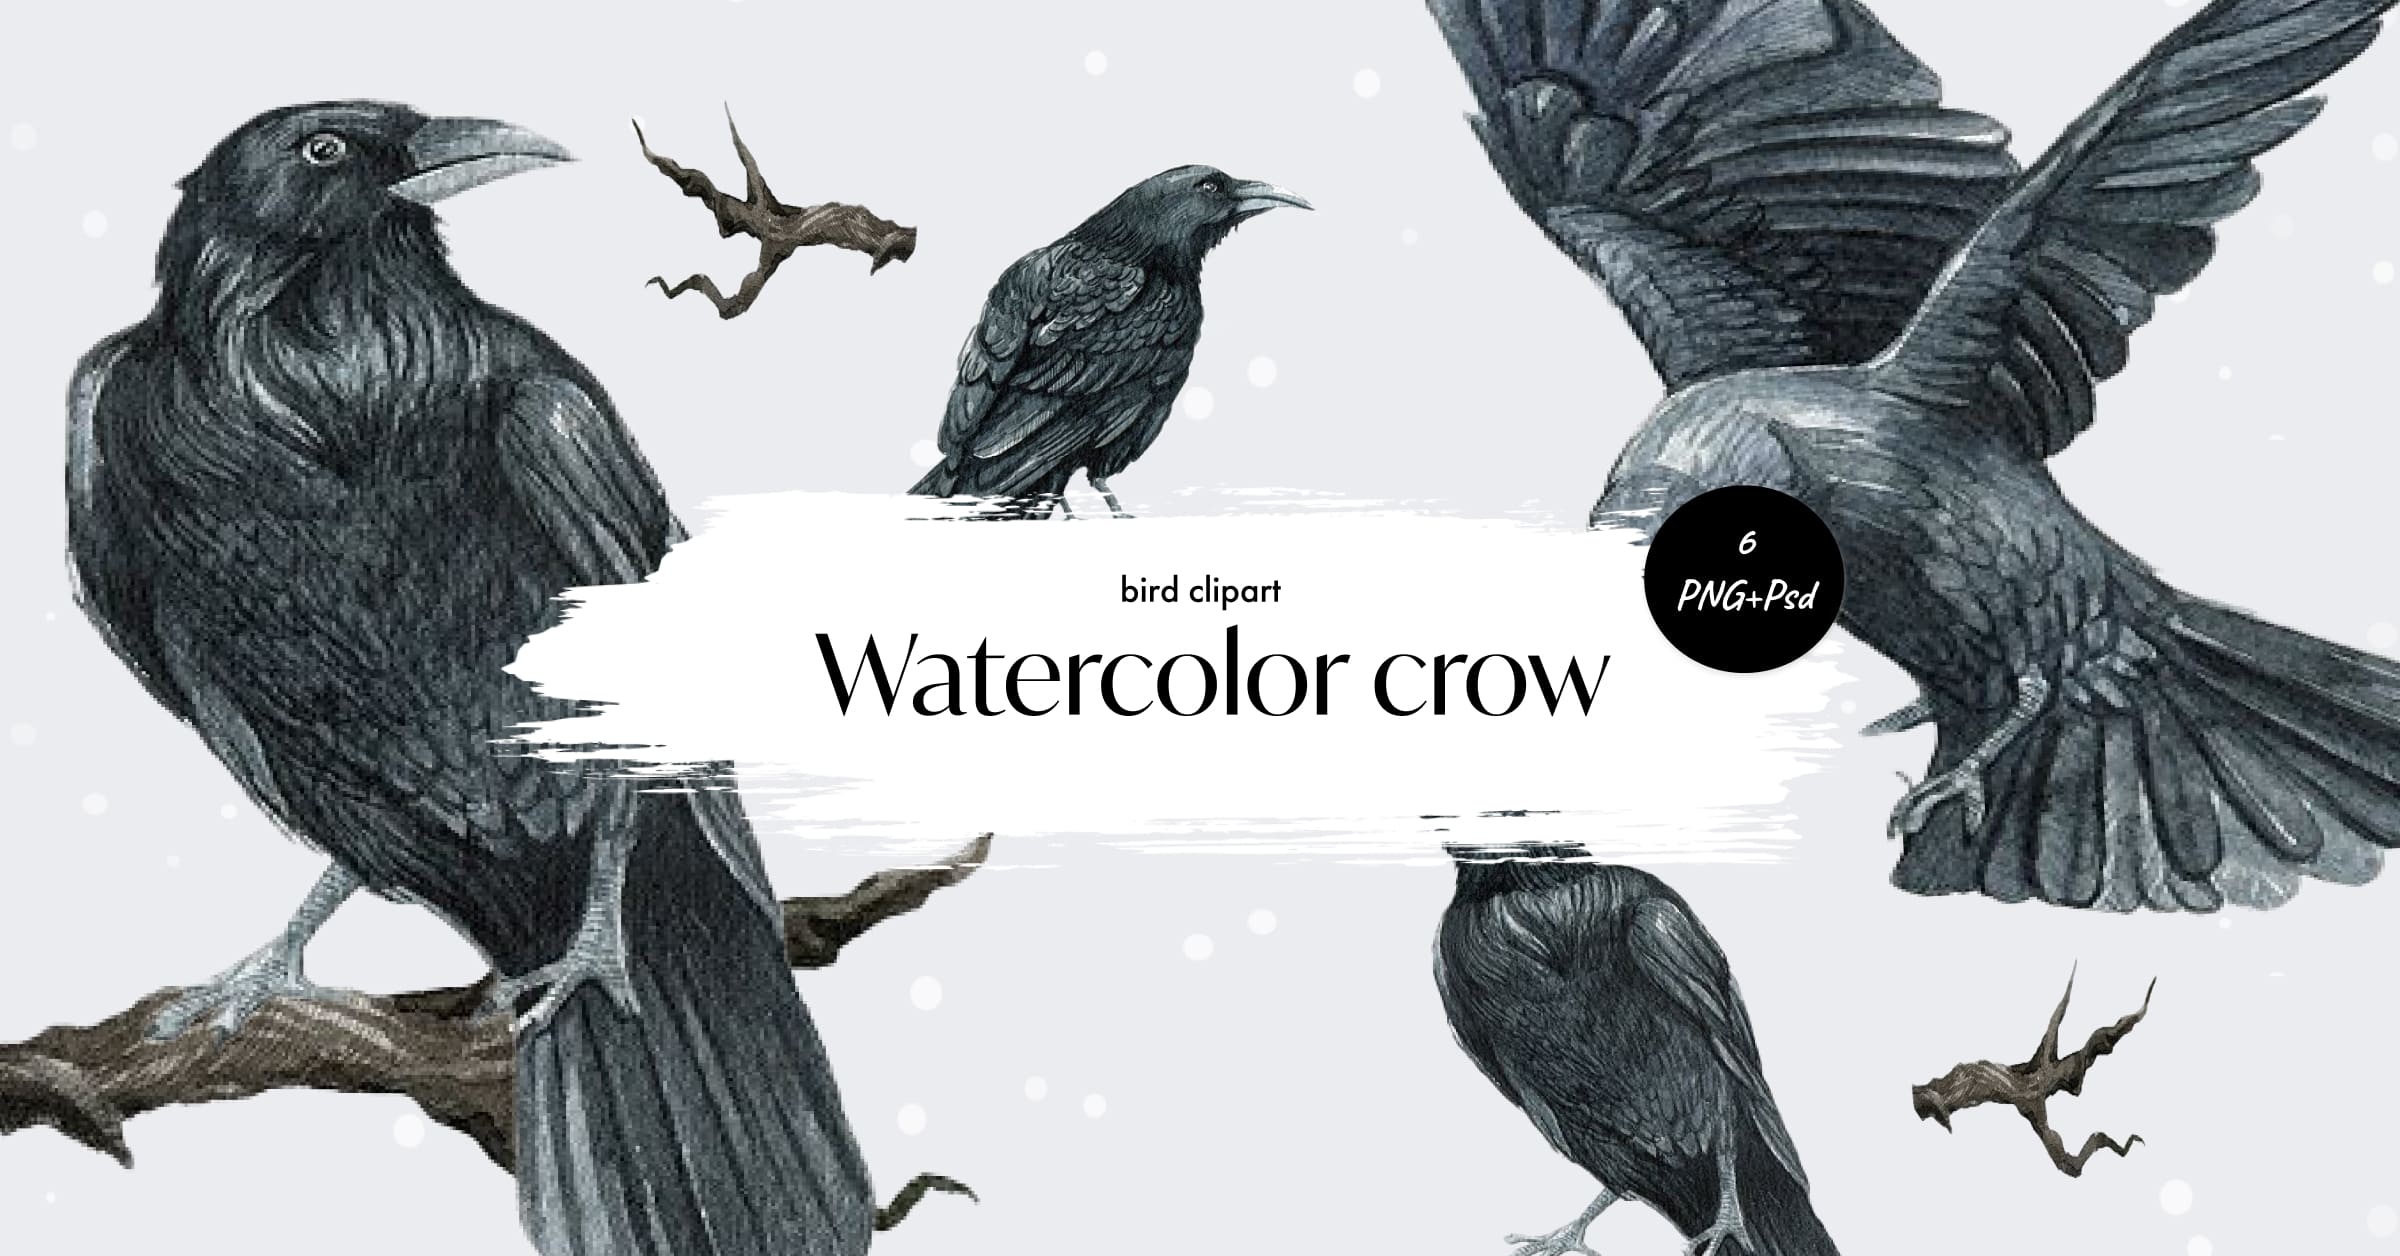 Watercolor ravencrow bird clipart - Facebook image preview.